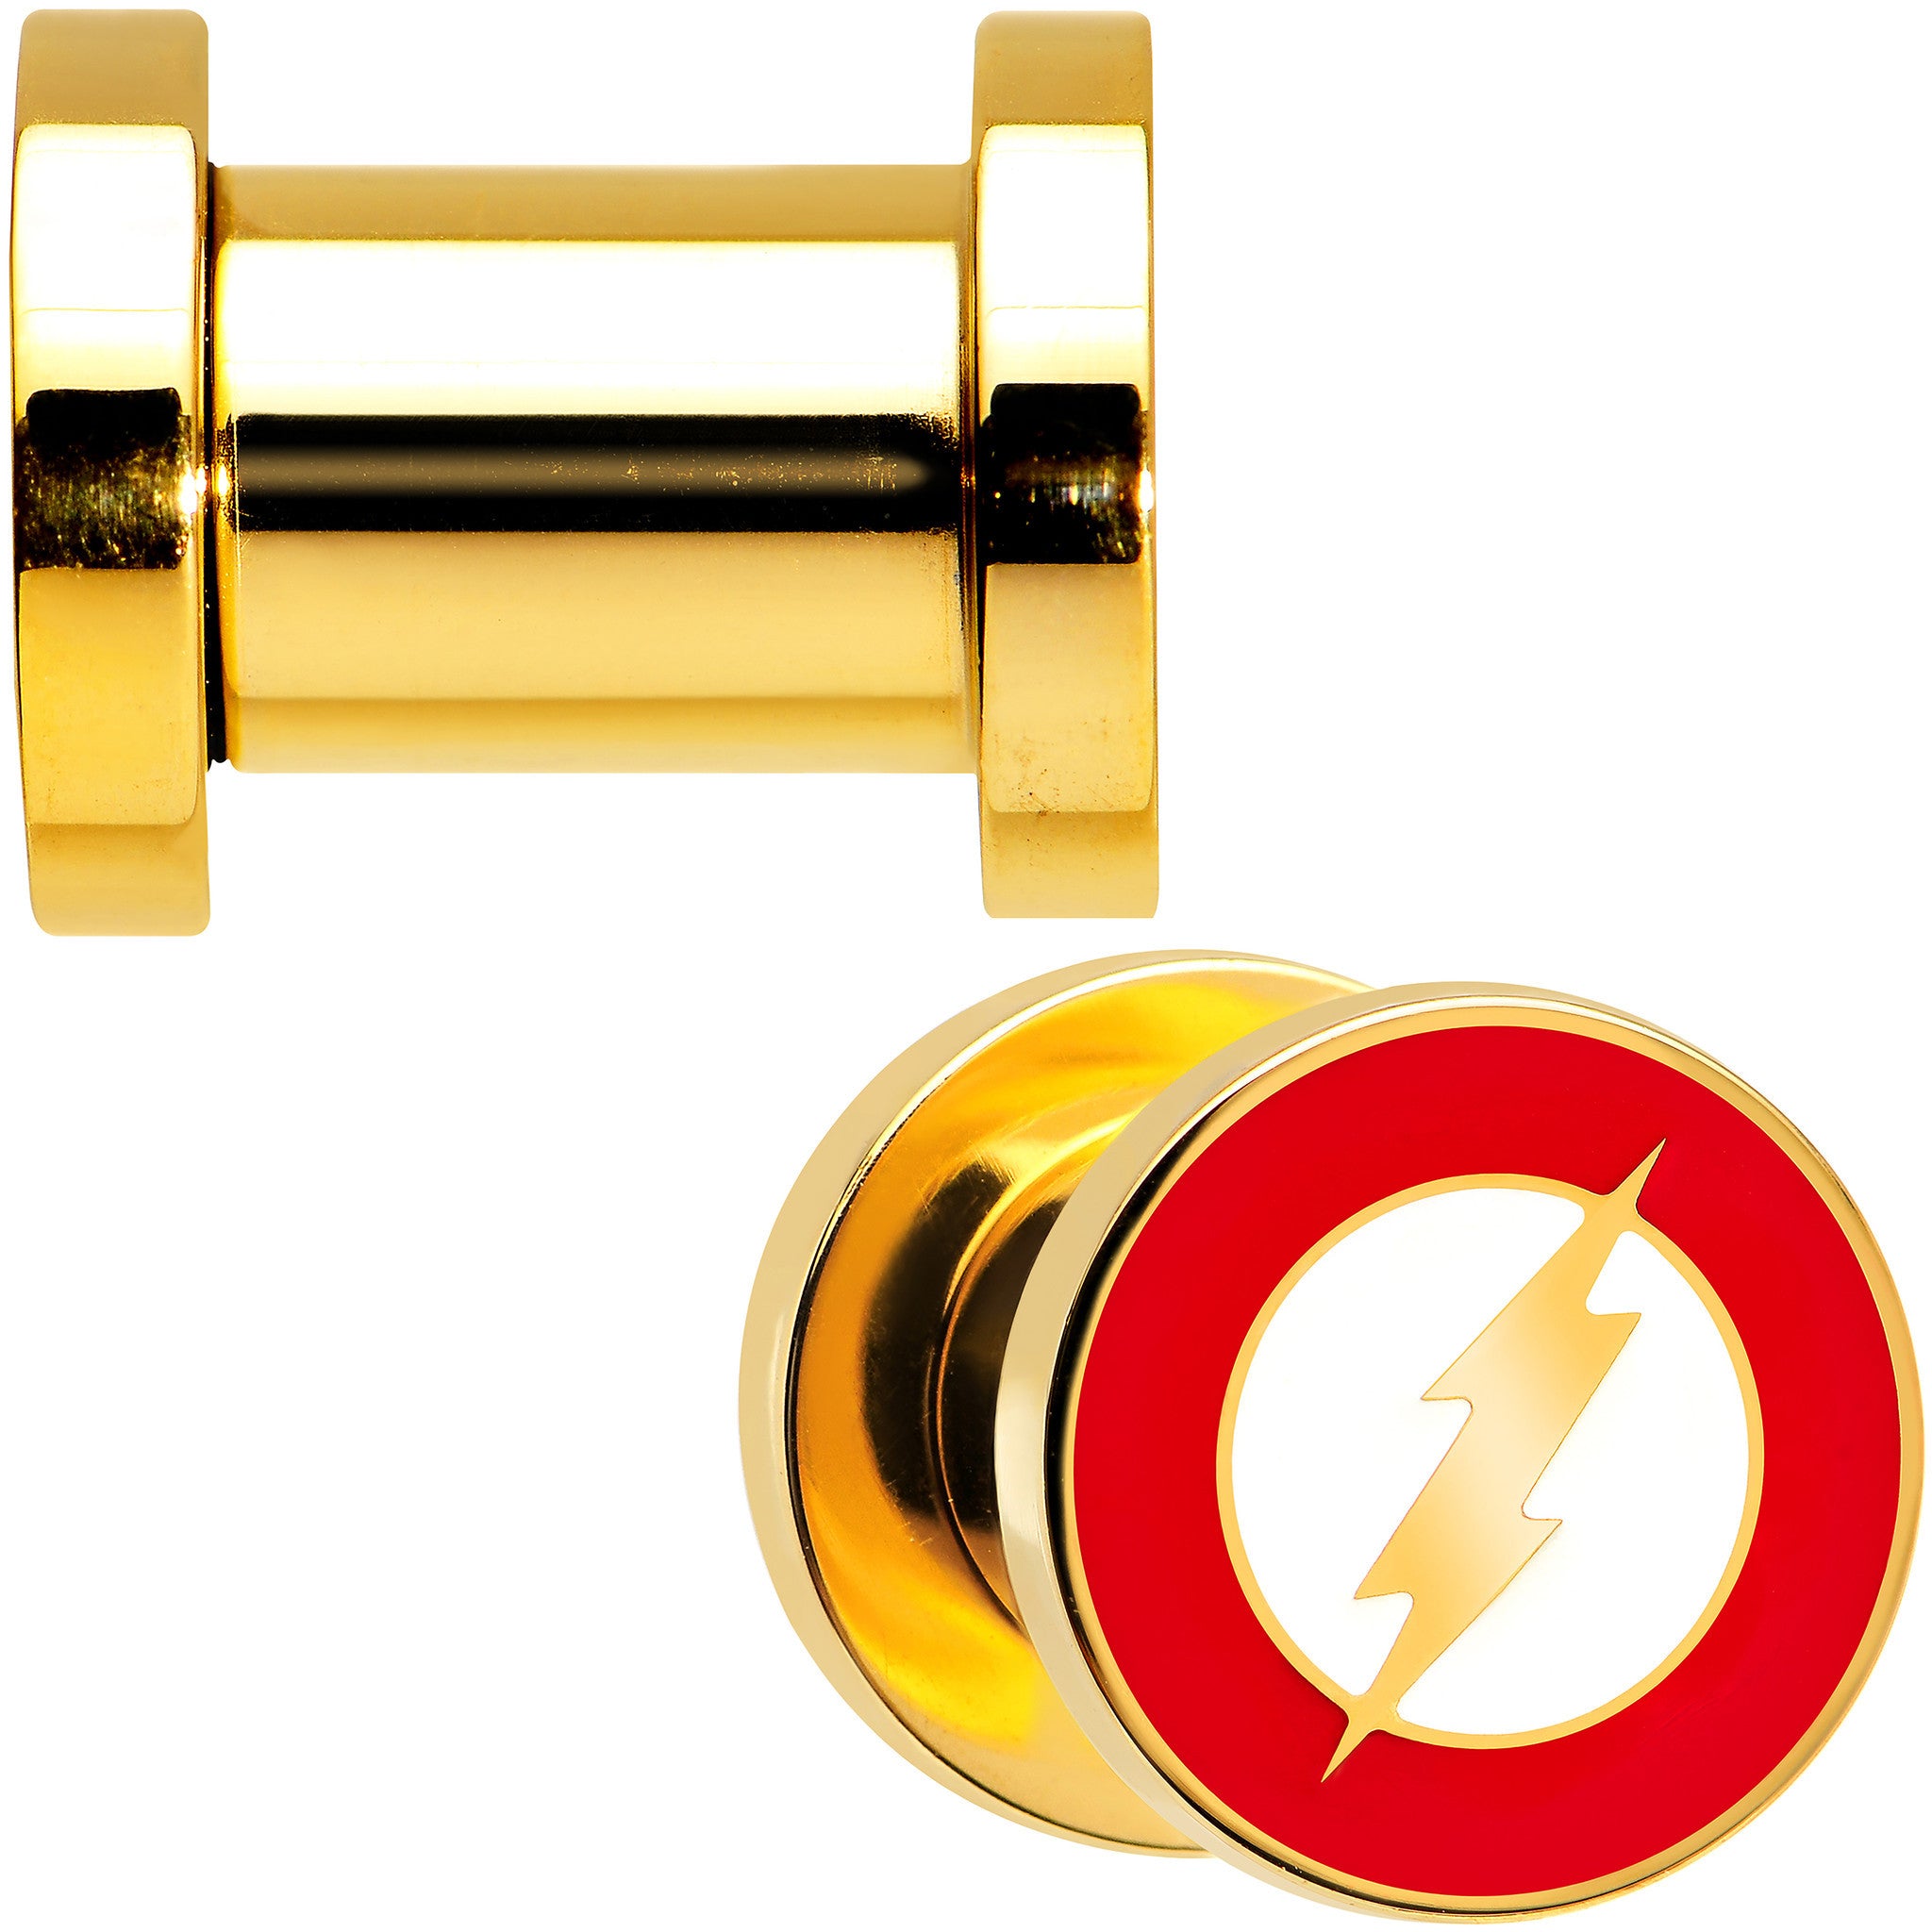 2 Gauge Gold Plated Licensed The Flash Logo Screw Fit Plug Set